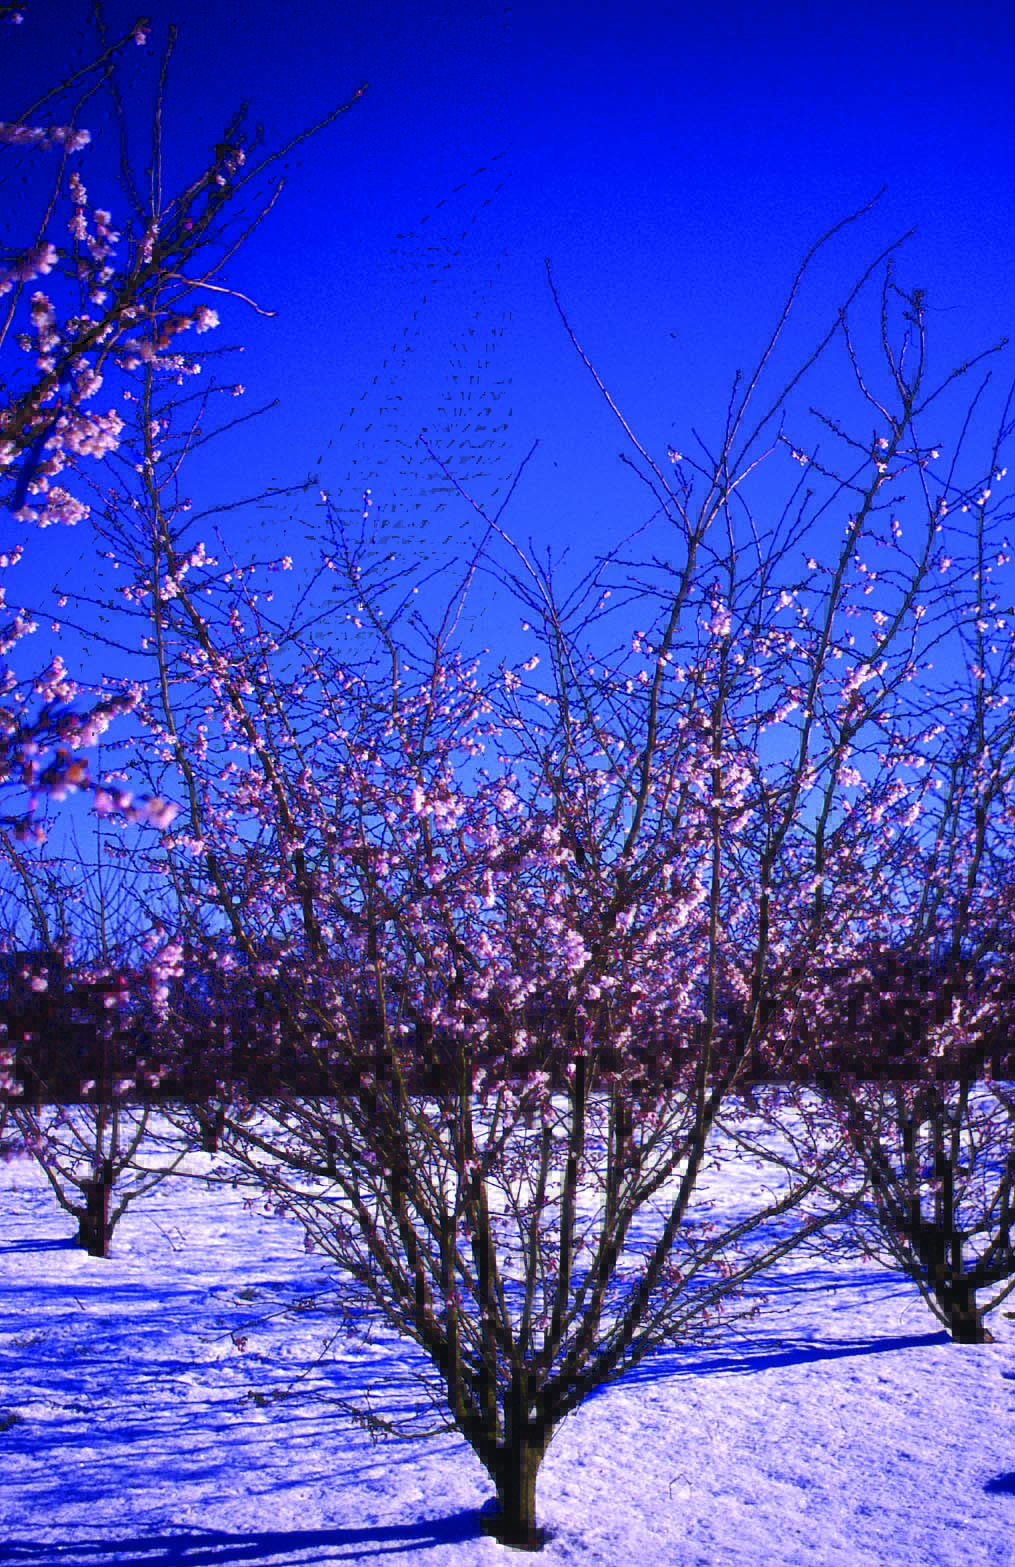 Prunus subhirtella Autumnalis Rosea multi-stem trees in snow